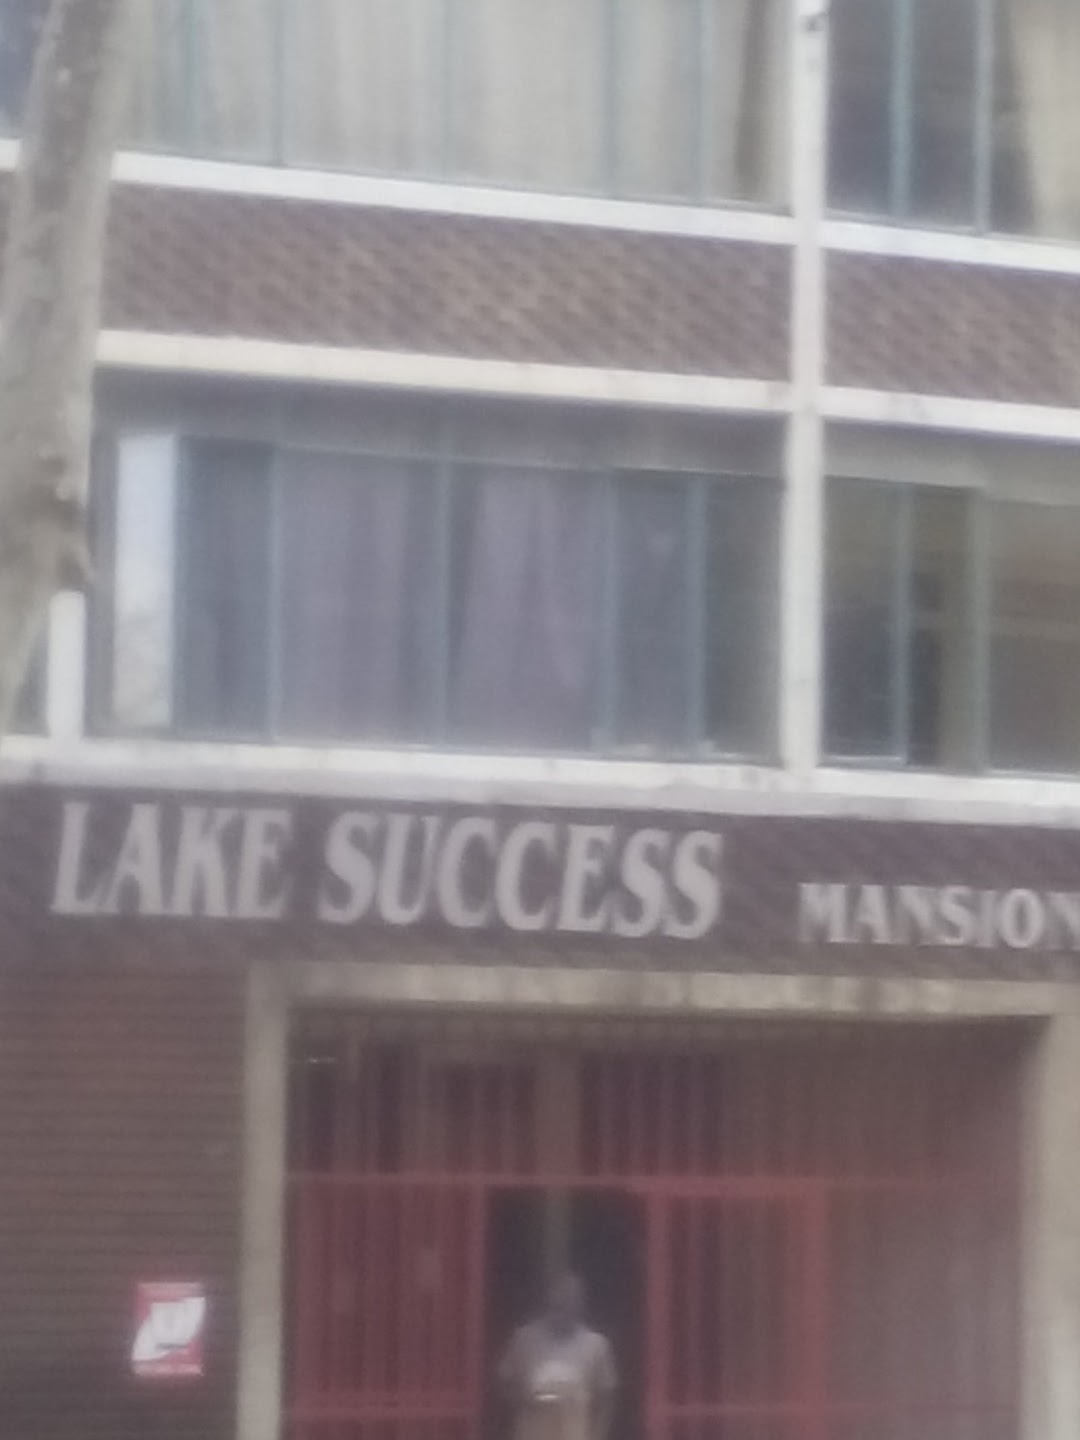 Lake Success Mansion.